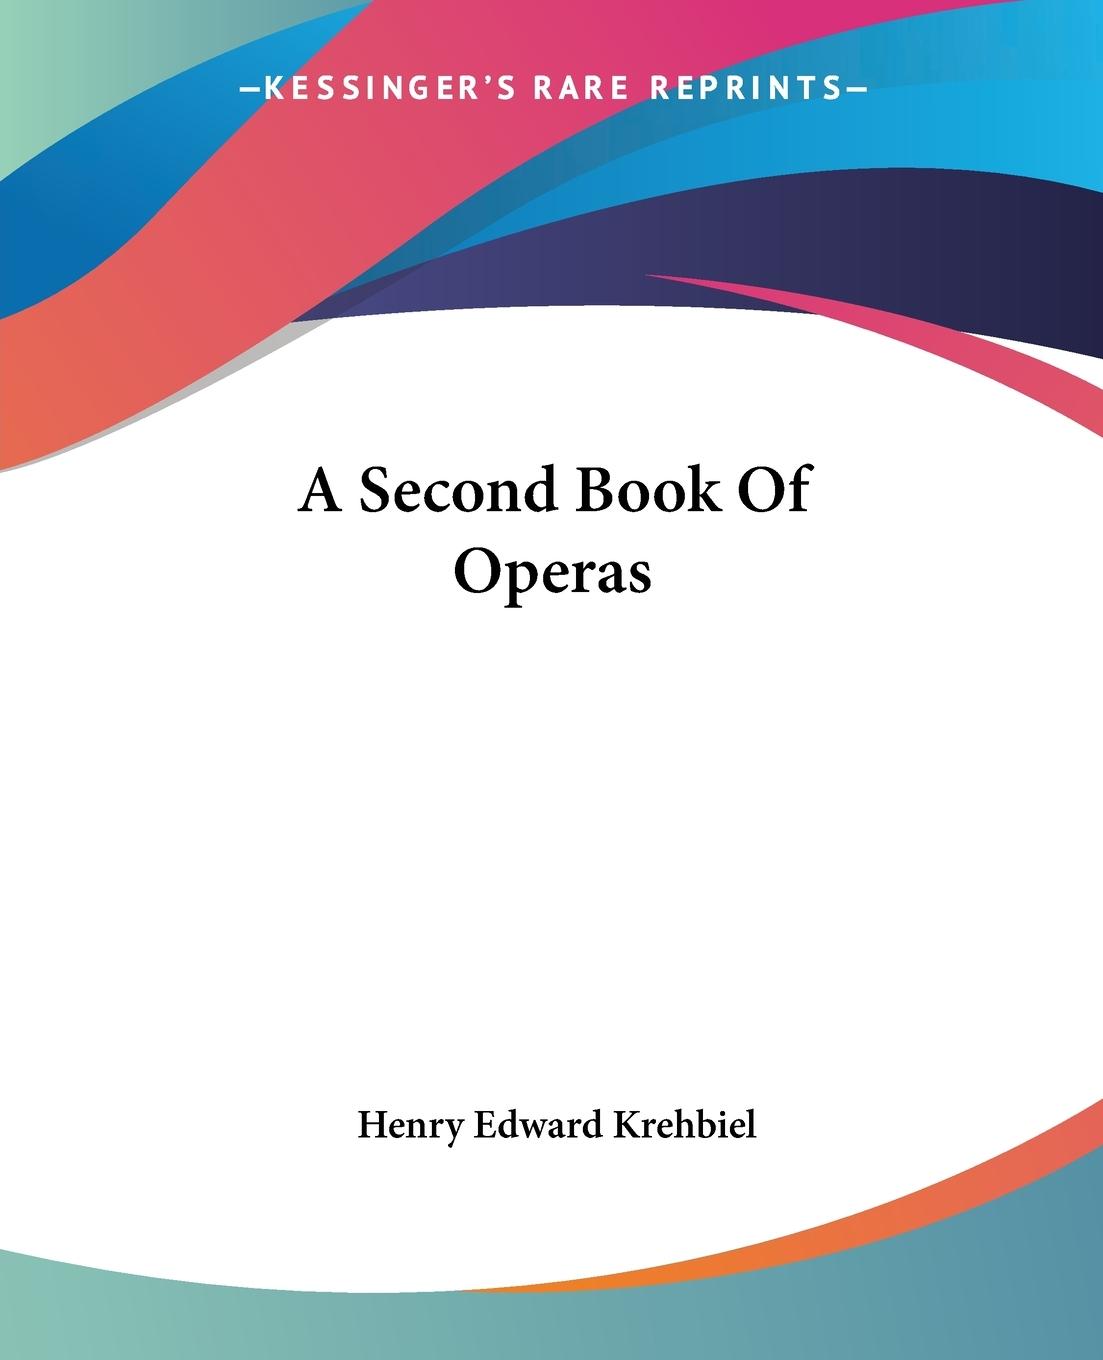 A Second Book Of Operas - Krehbiel, Henry Edward